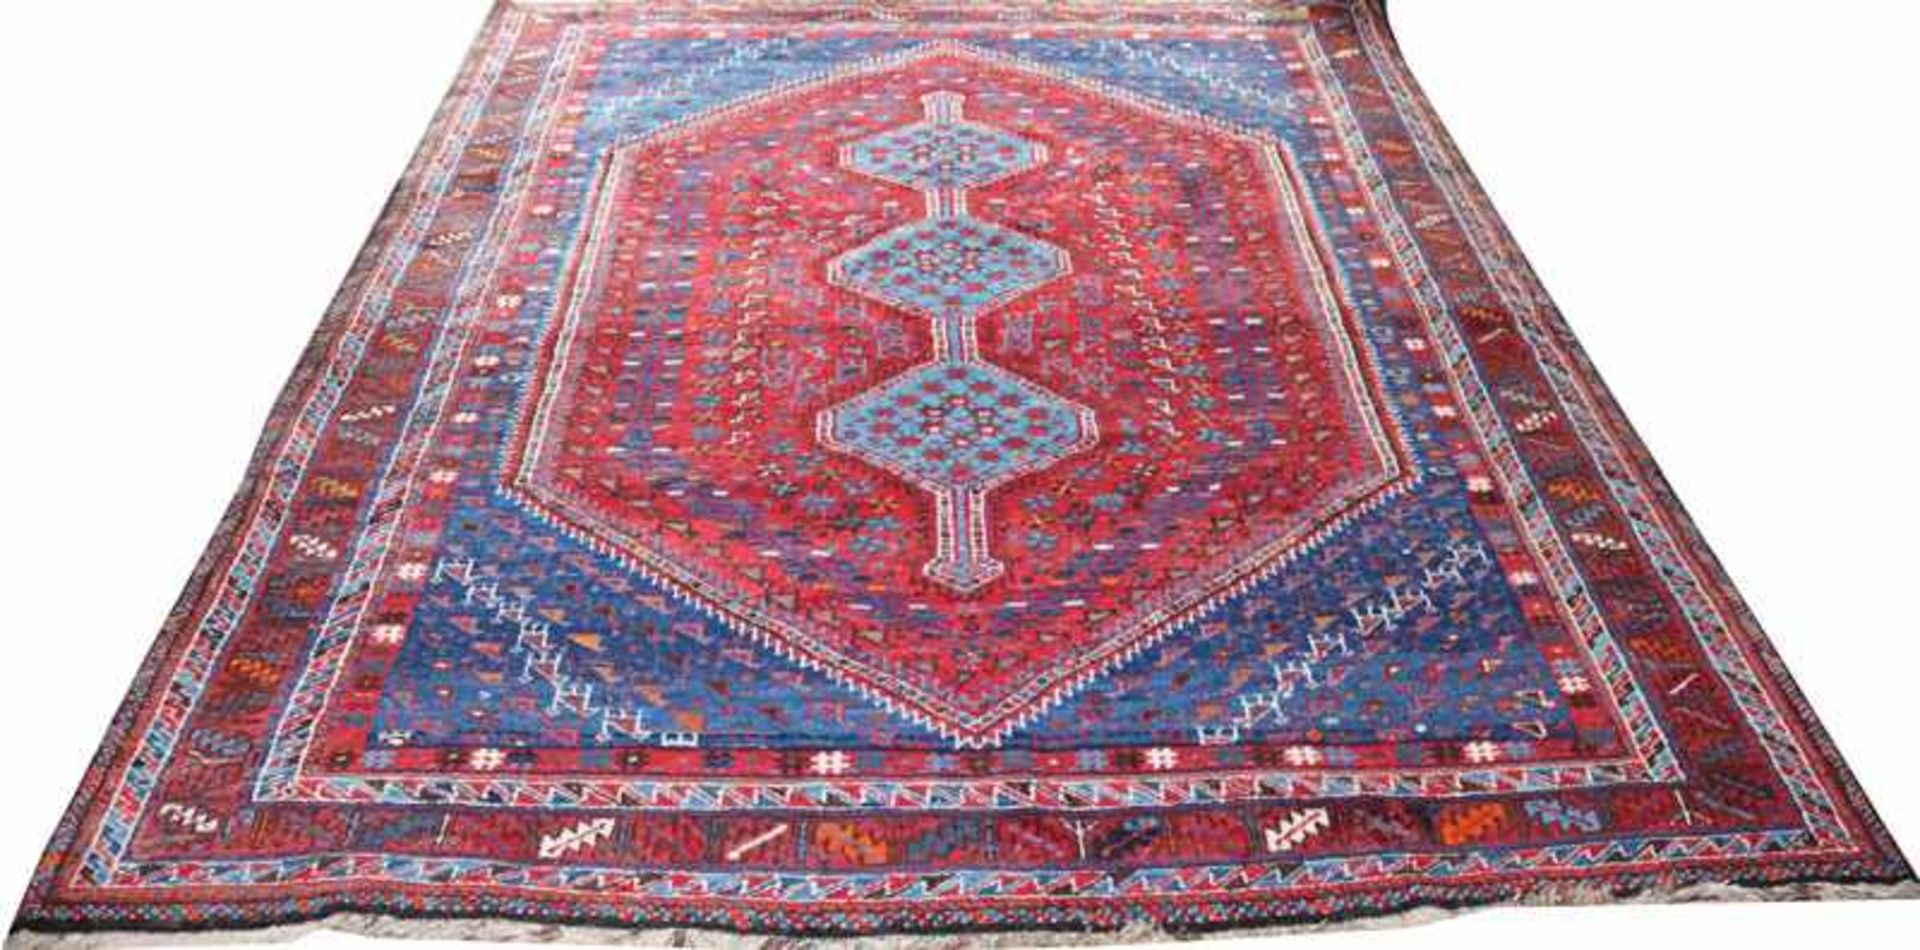 Teppich, rot/blau, Gebrauchsspuren, 285 cm x 210 cm